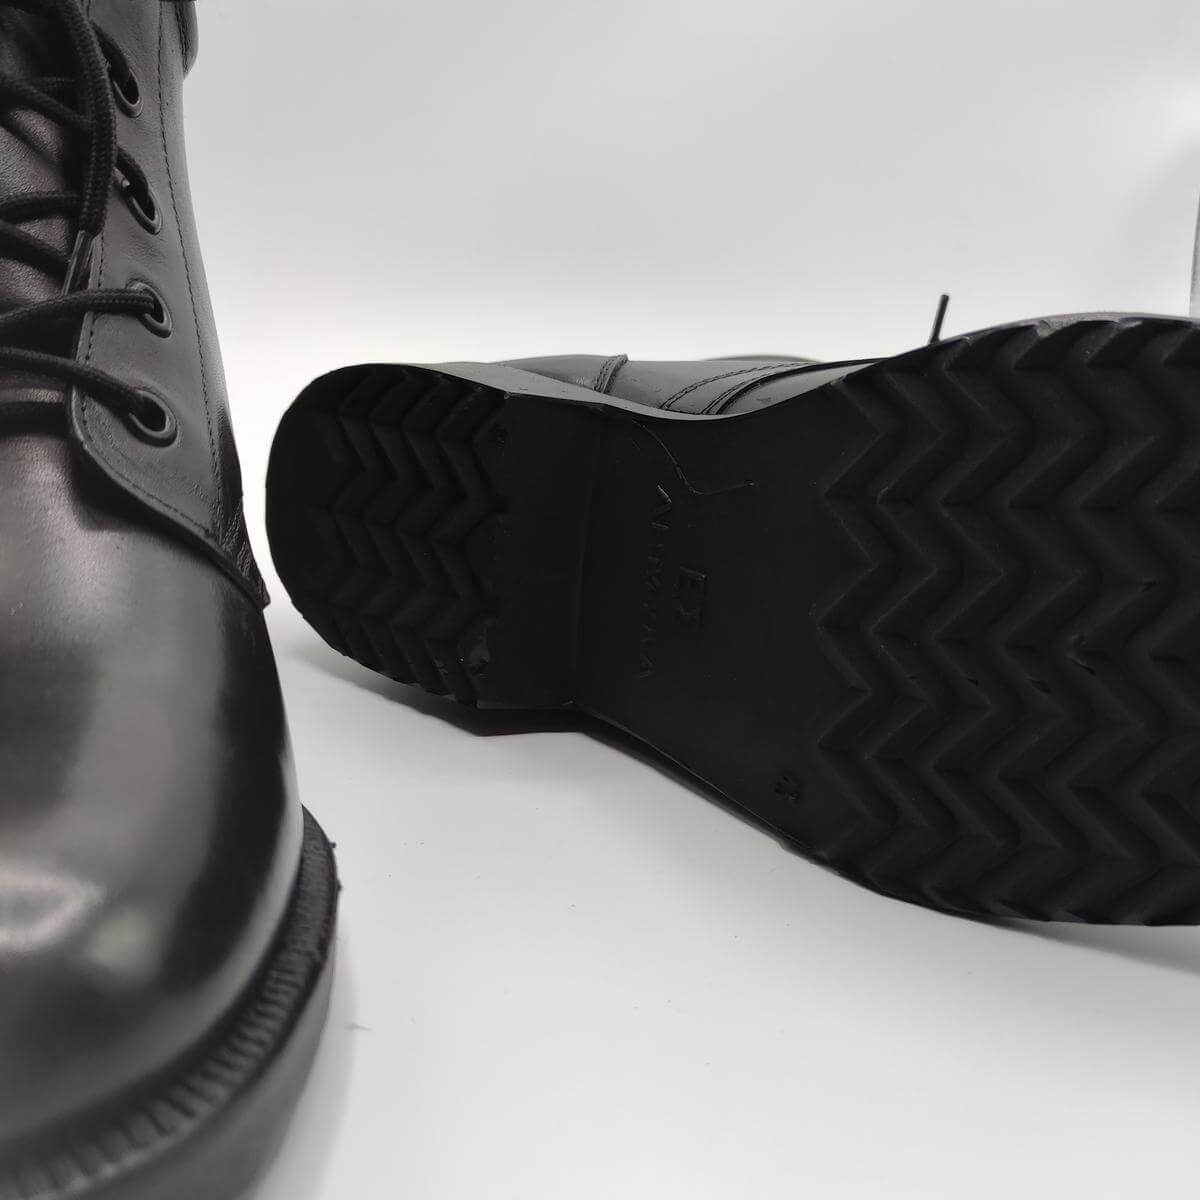 Men Leather Boots Lace Up Black Color